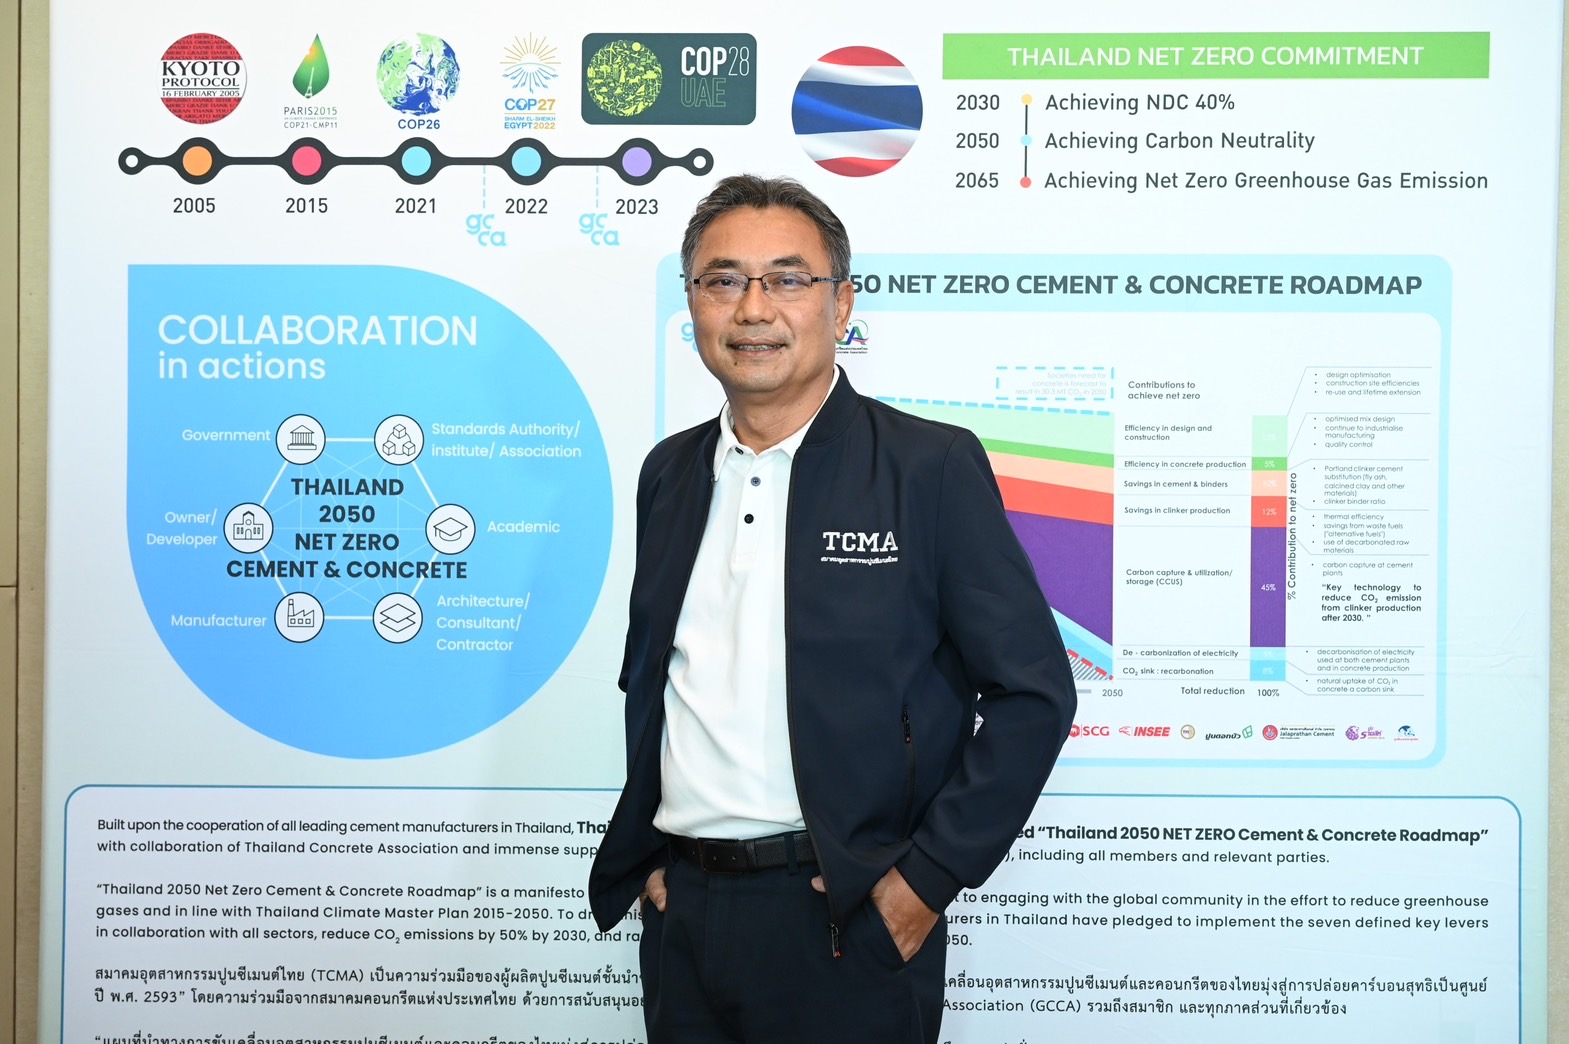 ดร.ชนะ ภูมี นายก TCMA ประกาศเร่งเครื่องเดินหน้าโรดแมปซีเมนต์ไทย เชื่อมโยง Green Funds ระดับโลกสู่ไทย ยกระดับการแข่งขัน บรรลุเป้าหมาย Net Zero ในปี 2050